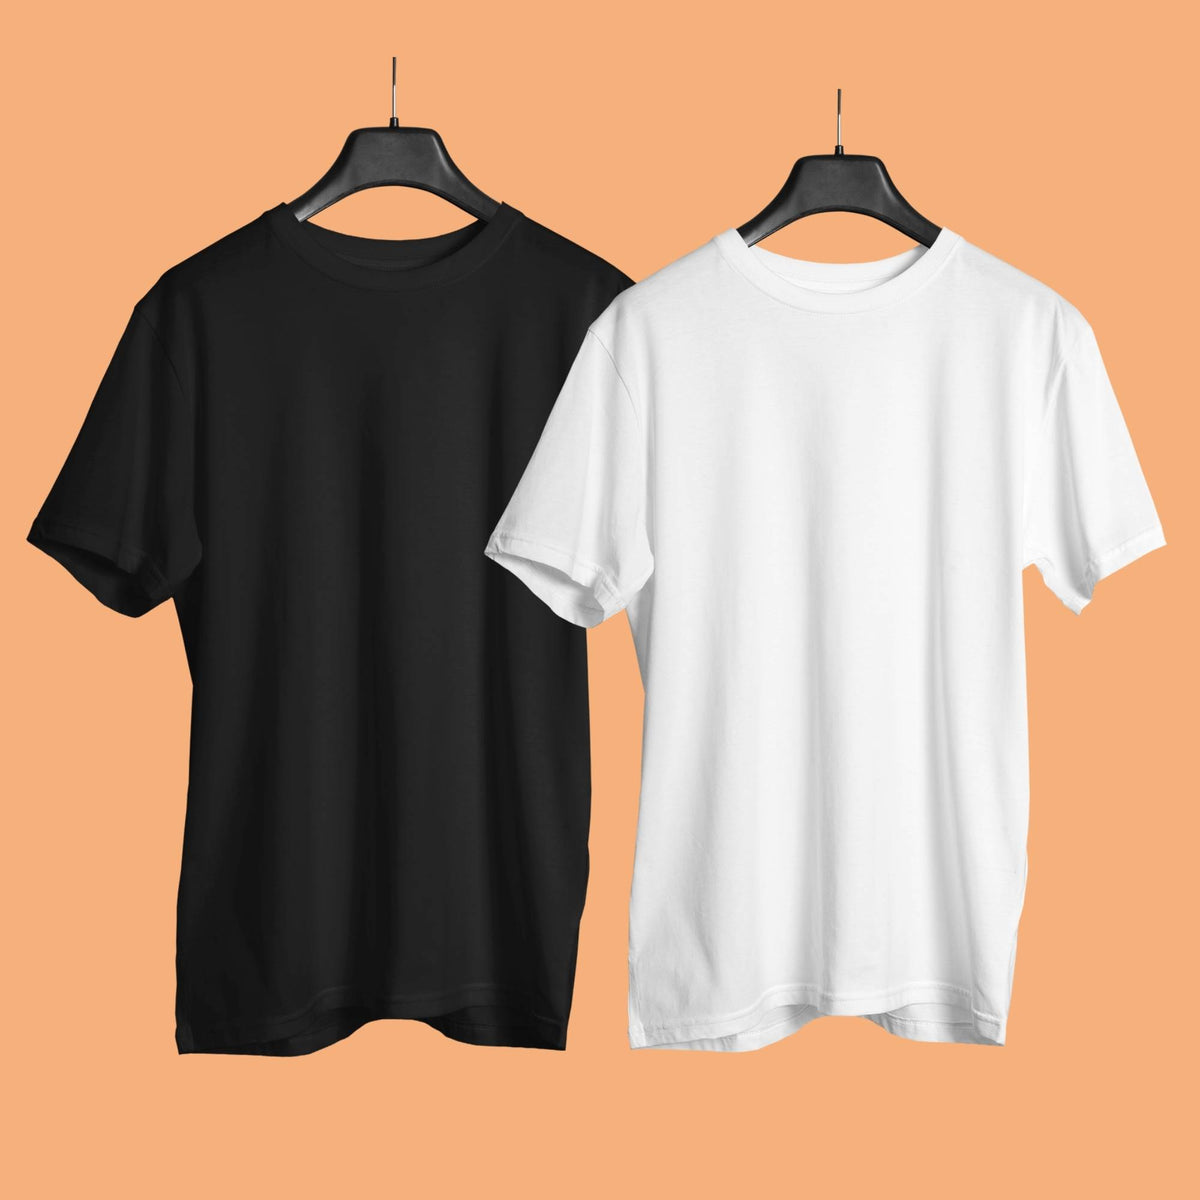 plain-couple-t-shirt-cotton-black-and-white-color-premium-quality-gogirgit-hanging